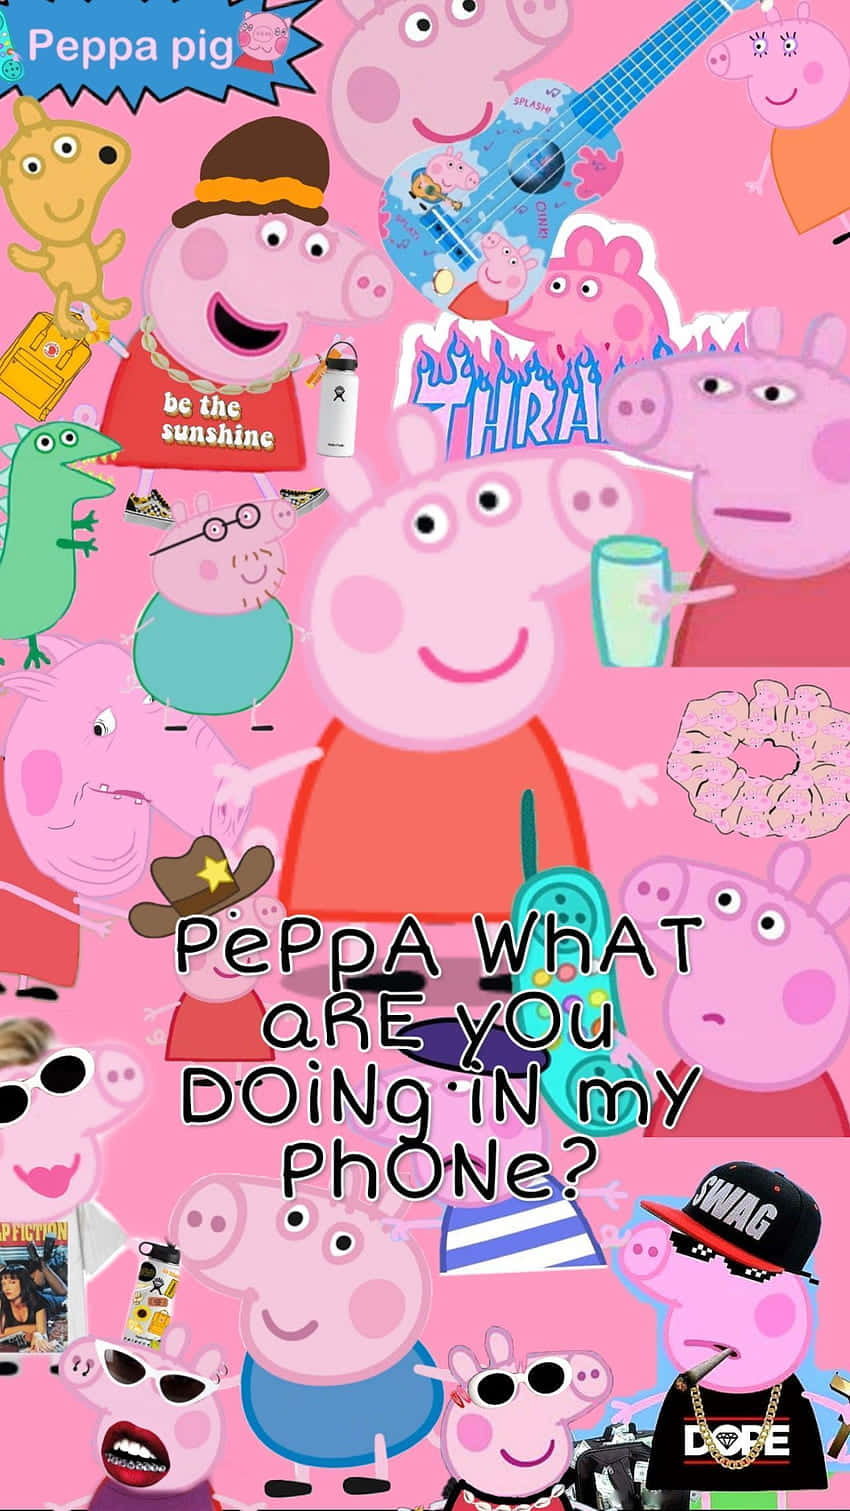 Peppa Pig billeder skarpt på din skærm.